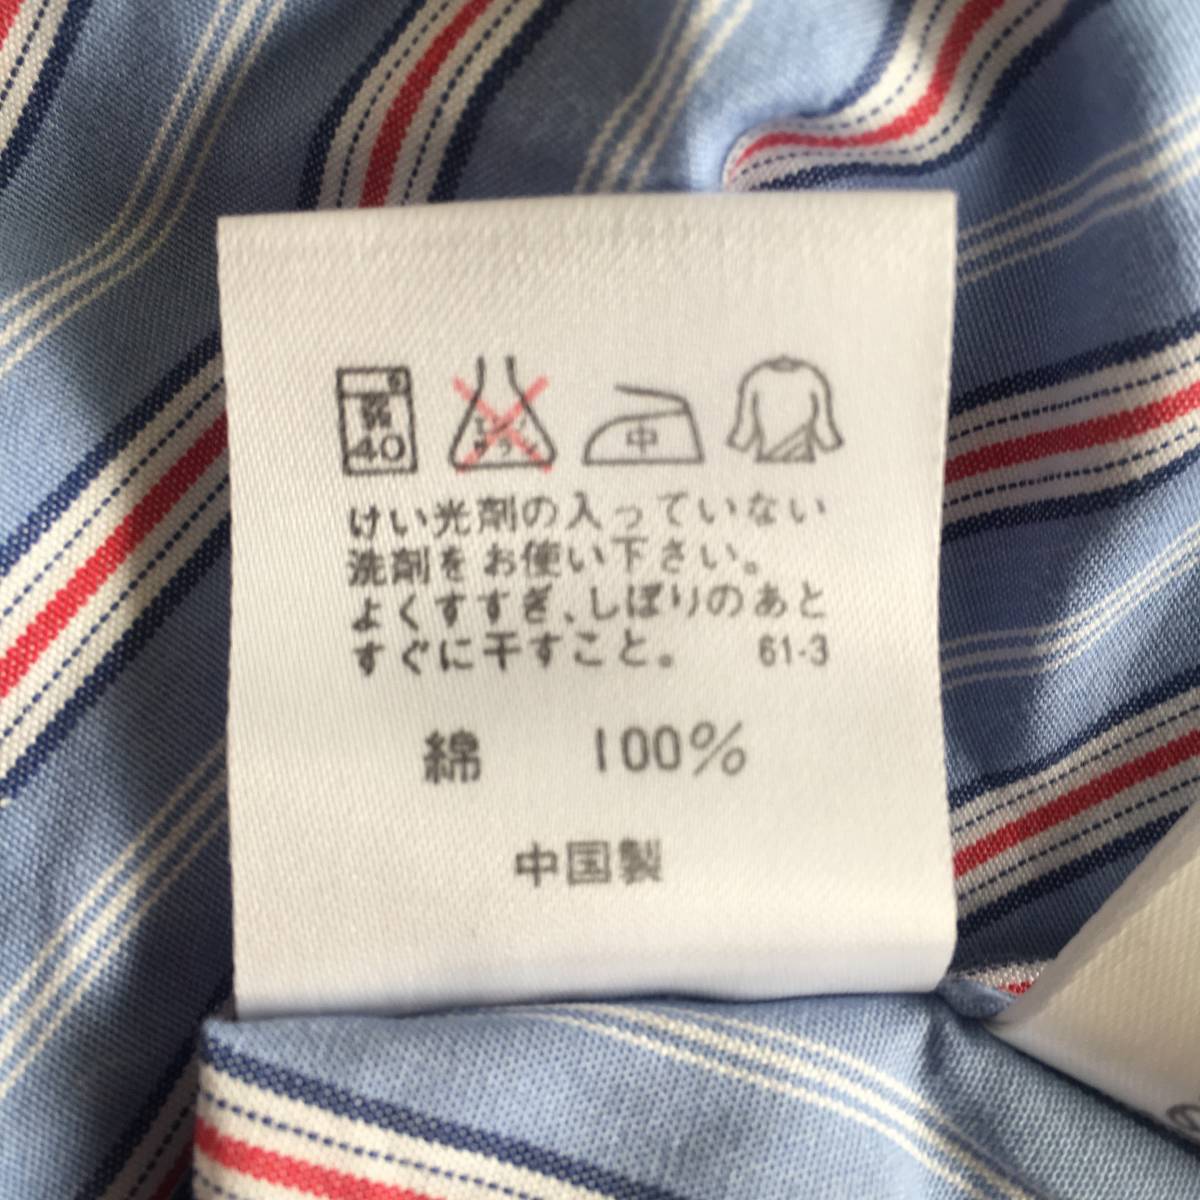  Ralph Lauren regular goods hose Mark embroidery shirt 